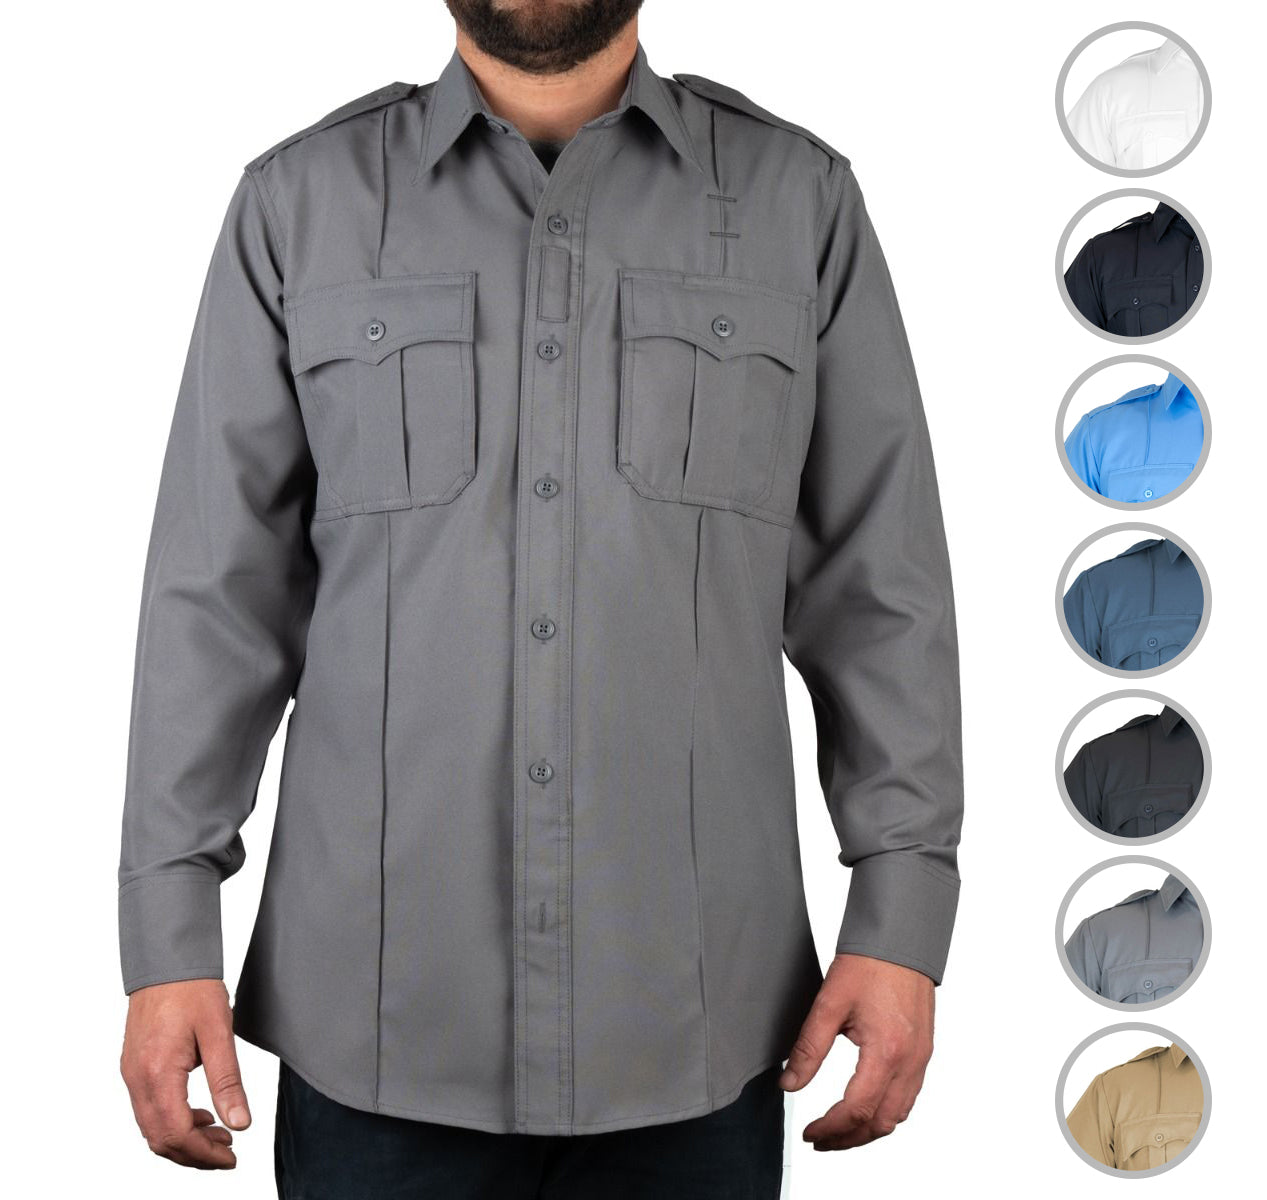 100% Polyester 4 Pocket Hidden Zipper Uniform Shirt - Long Sleeve ...